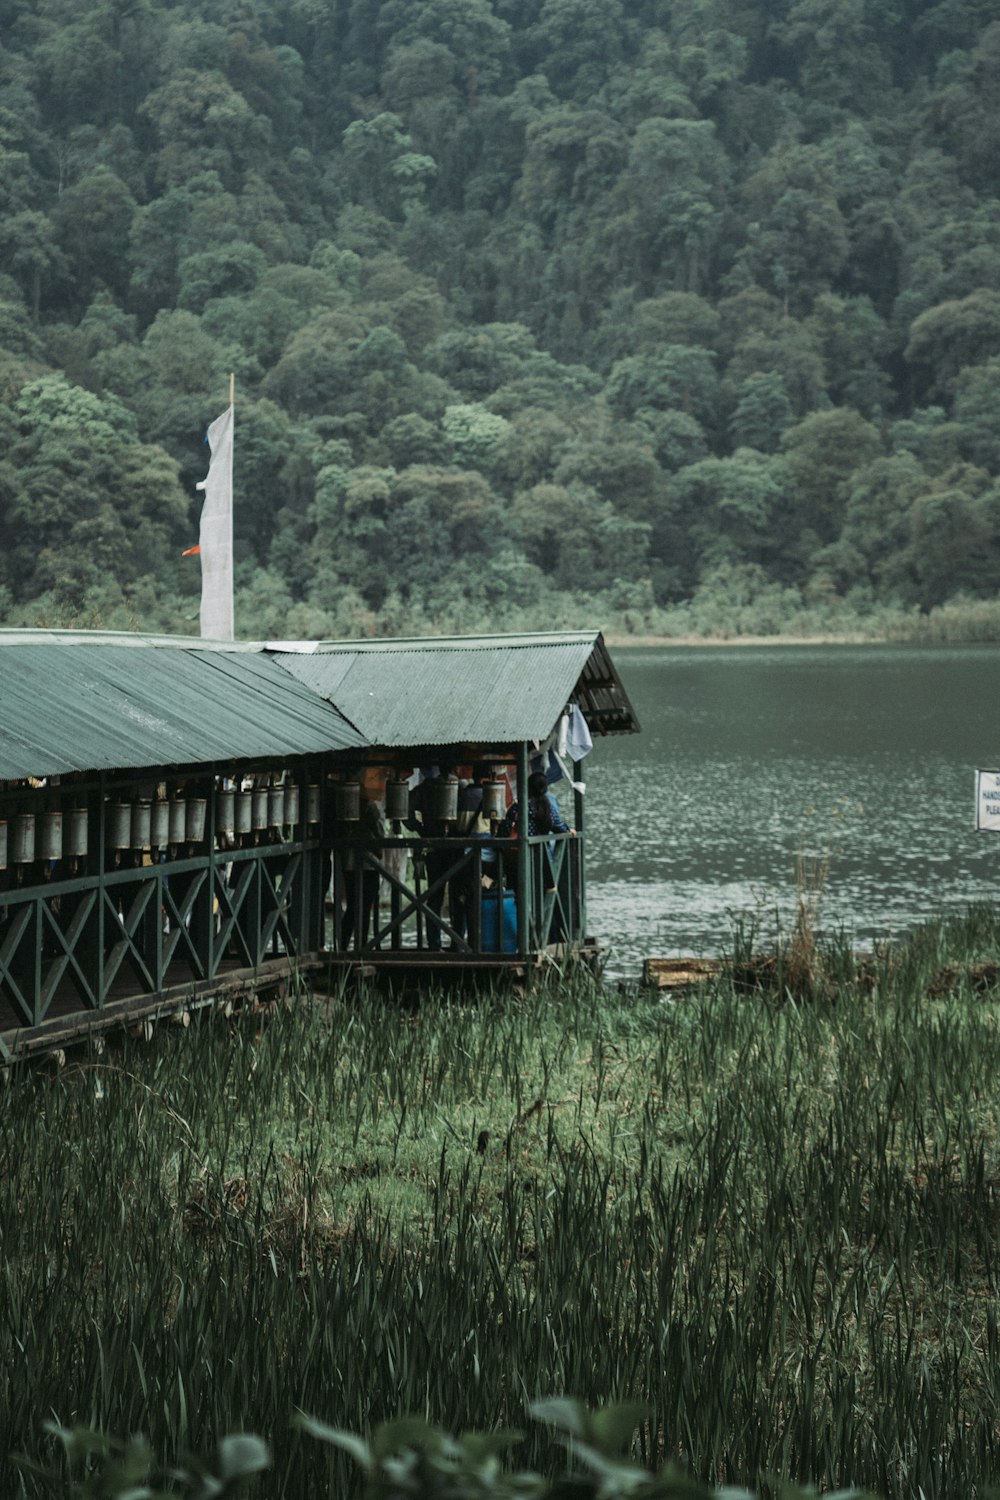 cabana de madeira marrom ao lado do corpo de água